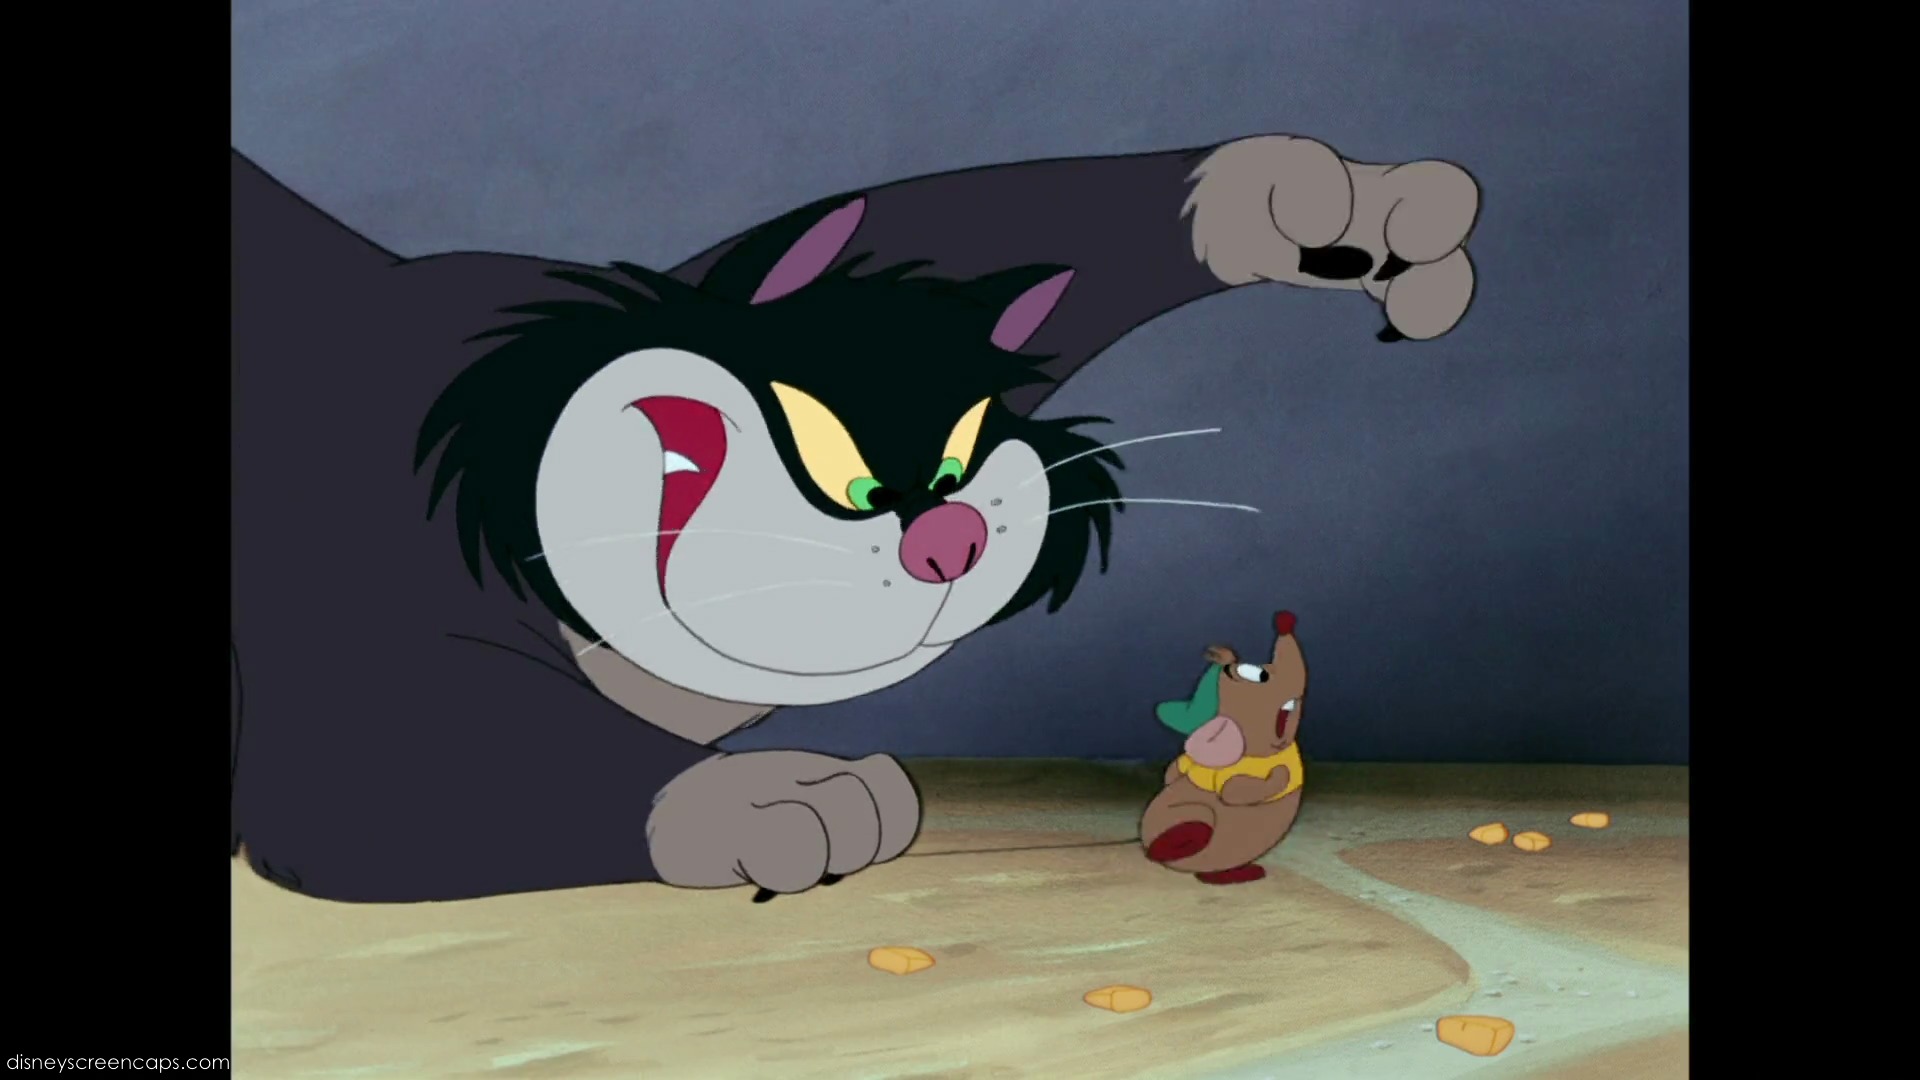 Mèo xấu trong phim hoạt hình không phải là những nhân vật phản diện lúc nào cũng đáng ghét. Hãy xem bức ảnh và tìm hiểu về những chú mèo chất lượng trong một số bộ phim hoạt hình nổi tiếng.